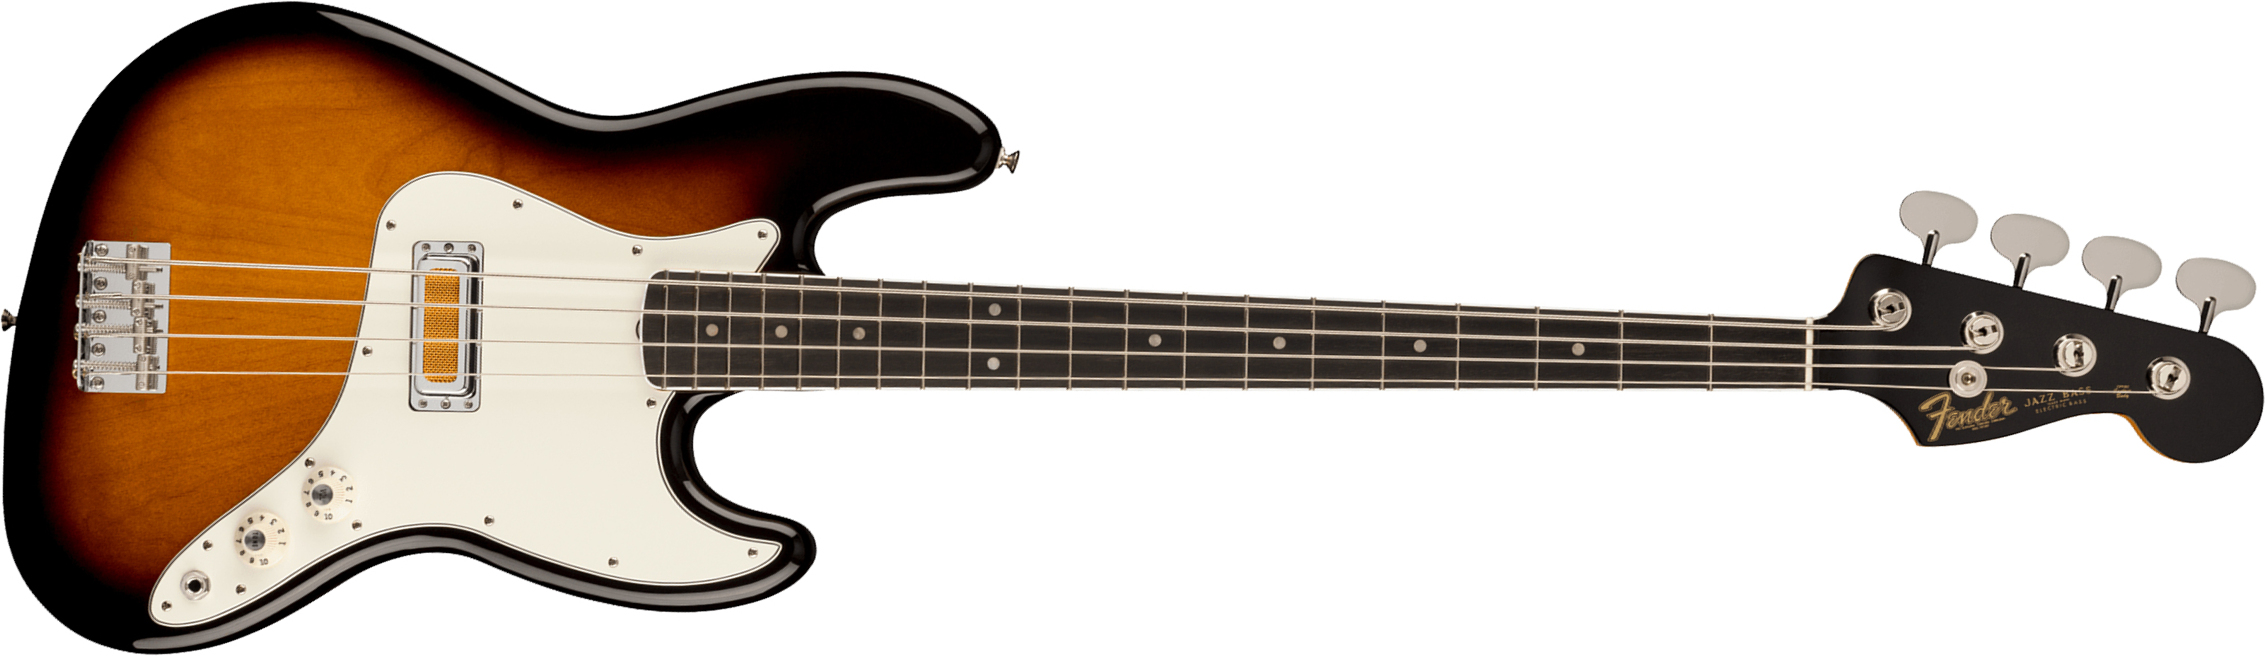 Fender Jazz Bass Gold Foil Ltd Mex Eb - 2-color Sunburst - Solid body elektrische bas - Main picture